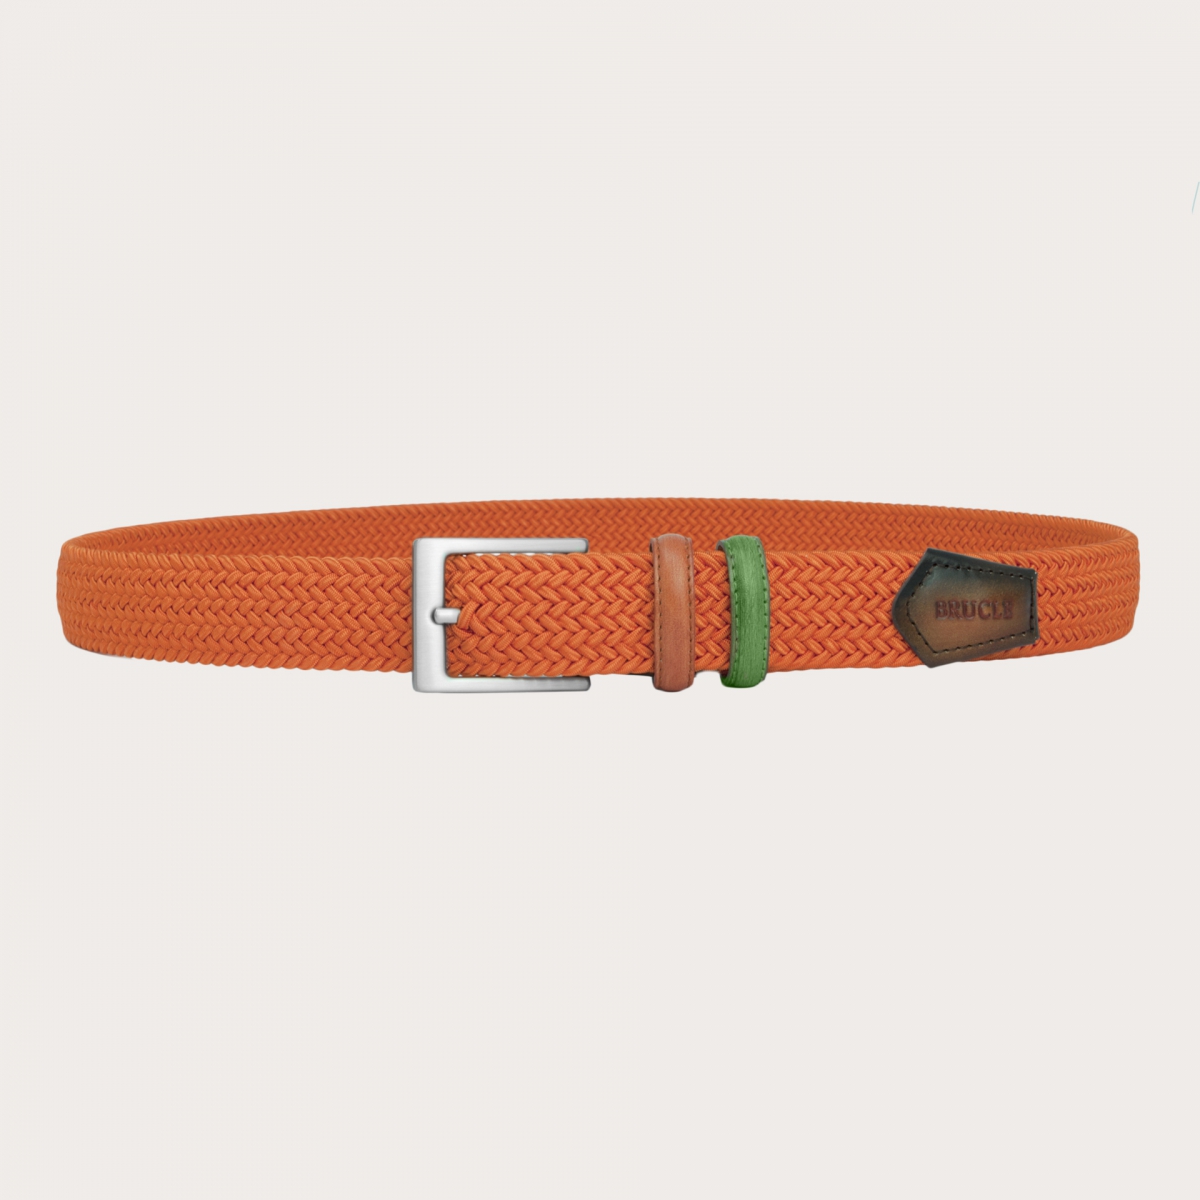 BRUCLE Cinturón elástico trenzado naranja con partes de piel bicolor tamponada a mano